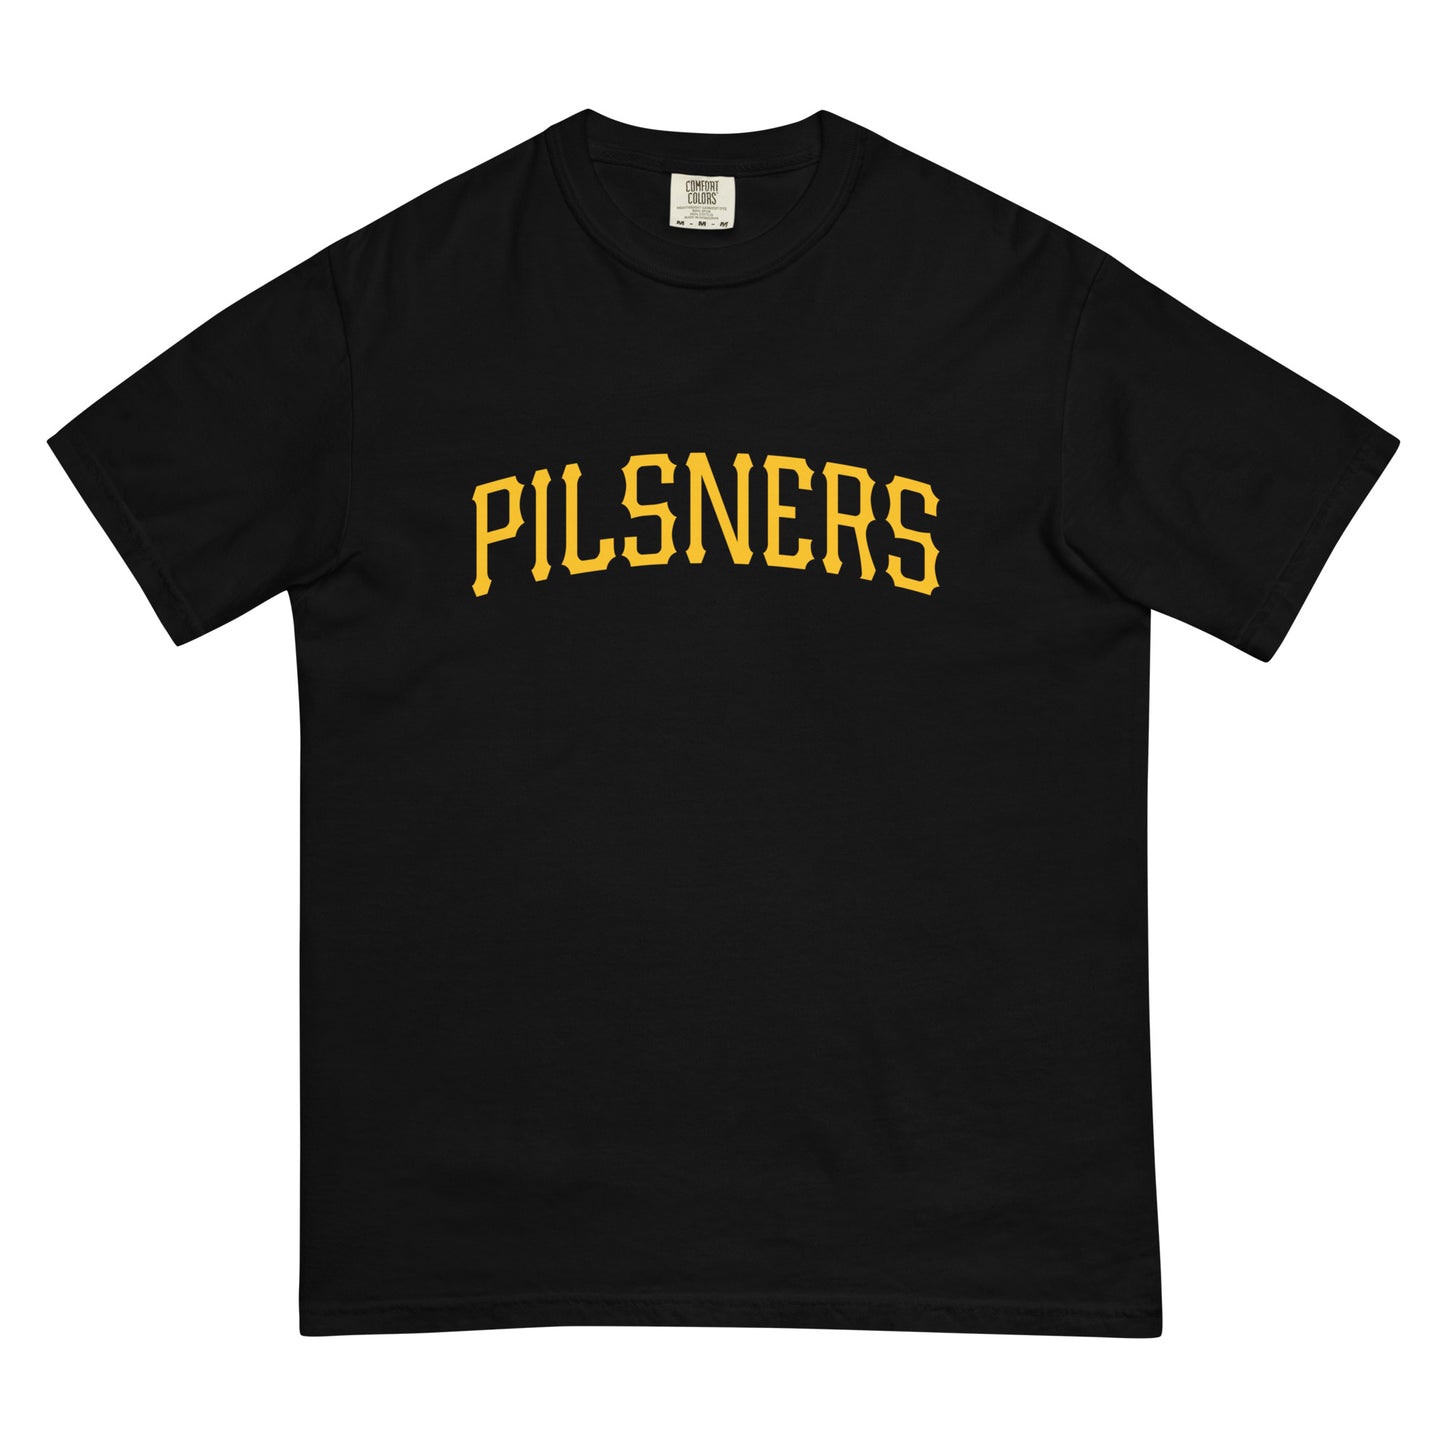 Pilsners II